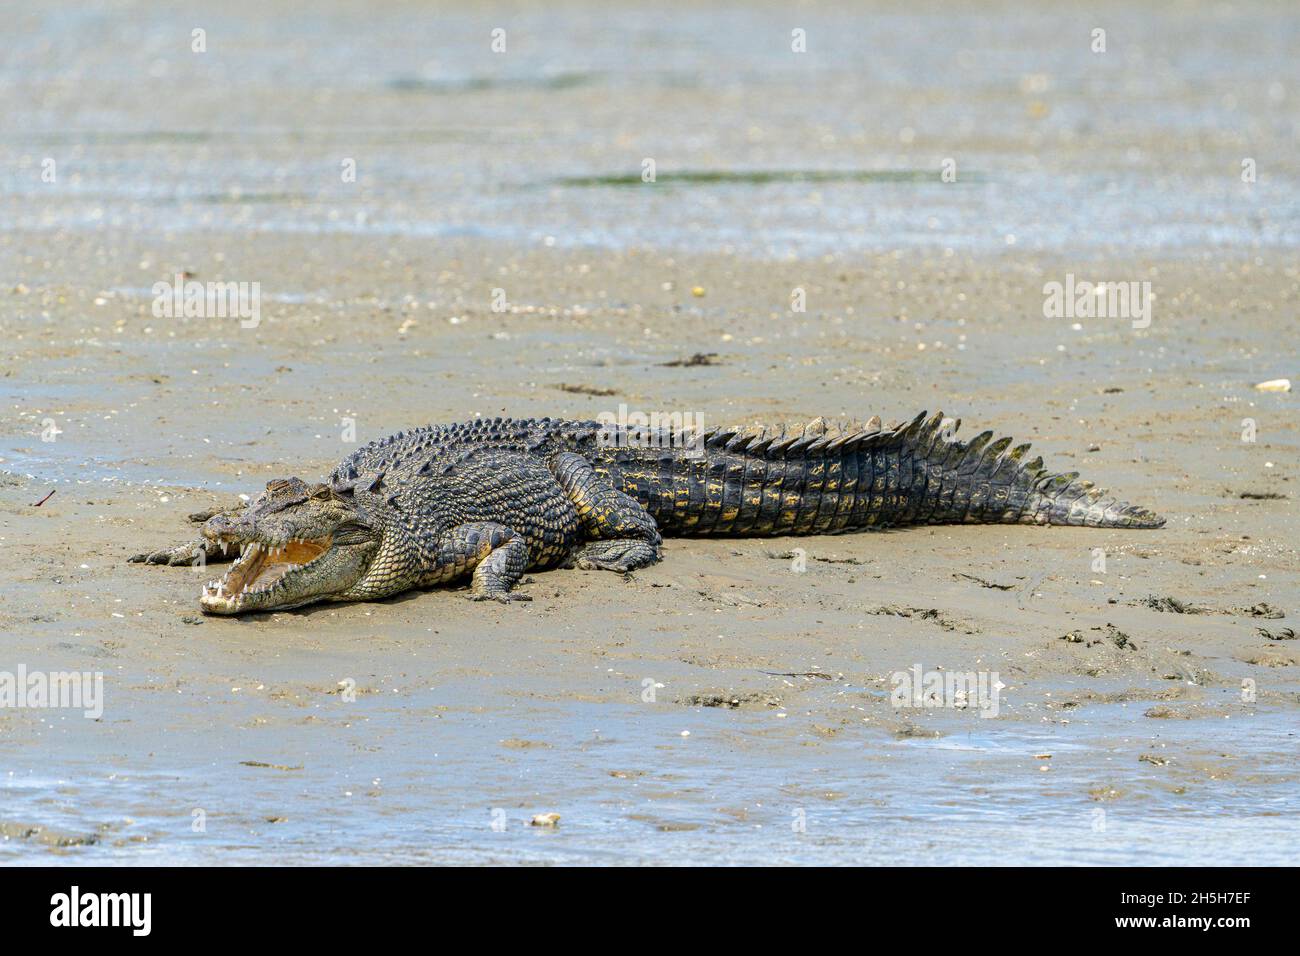 Cocodrilo estuarino o cocodrilo de agua salada (Crocodylus porosus) tomando sol sobre lodo plano en marea baja. Norte de Queensland, Australia Foto de stock